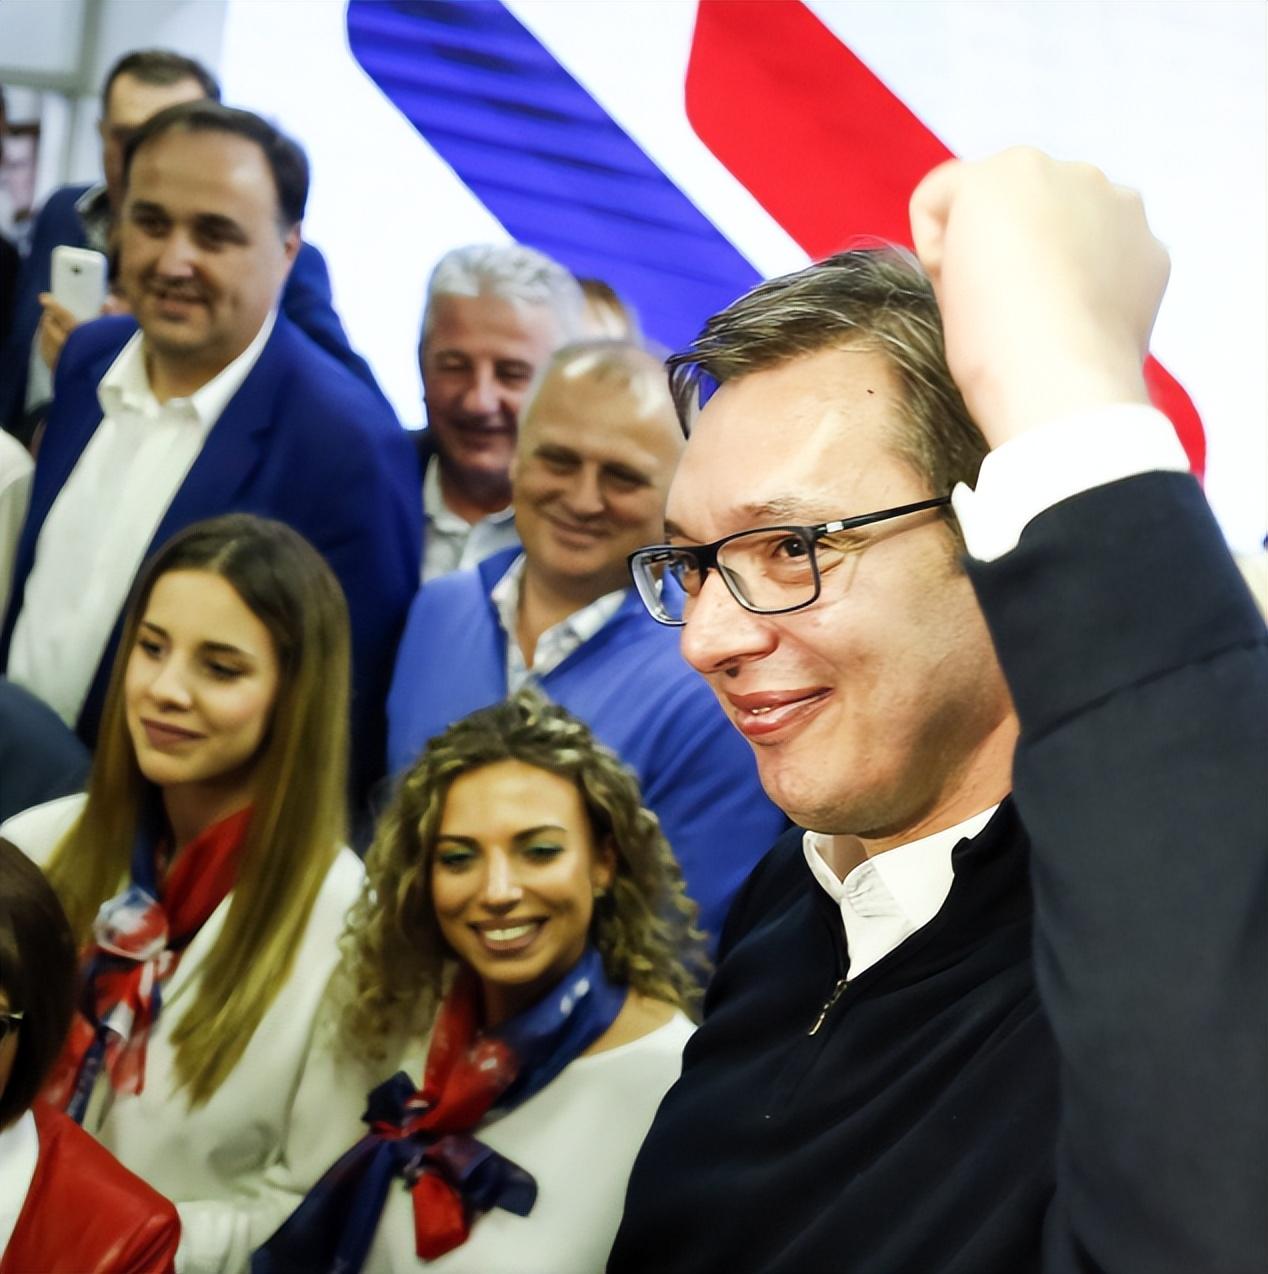 武契奇将继续担任塞尔维亚前进党主席至2022年大选